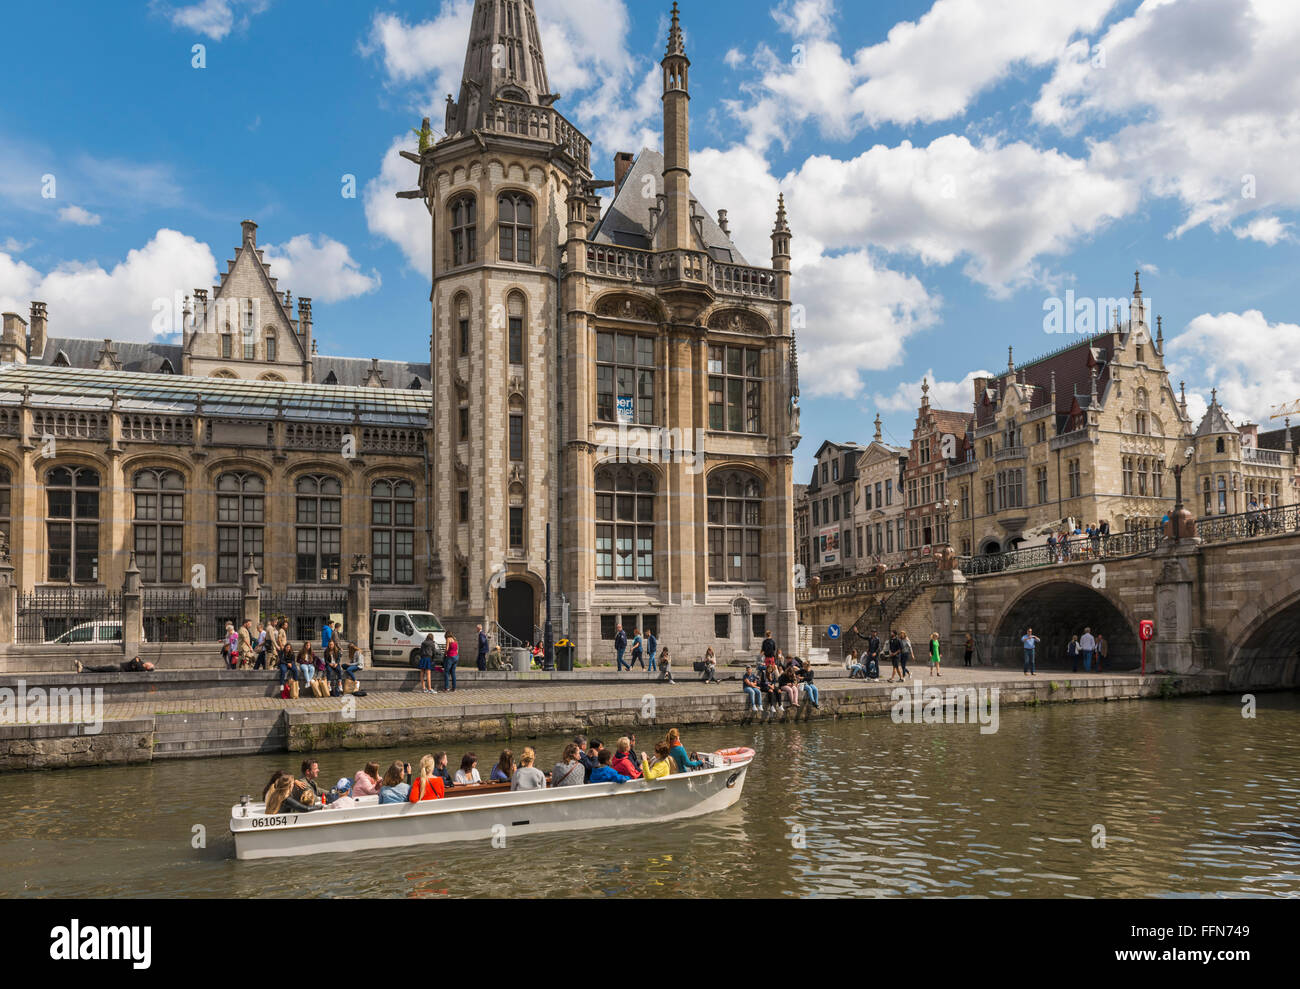 Gand, Belgique, Europe - les touristes dans un bateau d'excursion sur la rivière dans le quartier de la vieille ville de Gand Banque D'Images